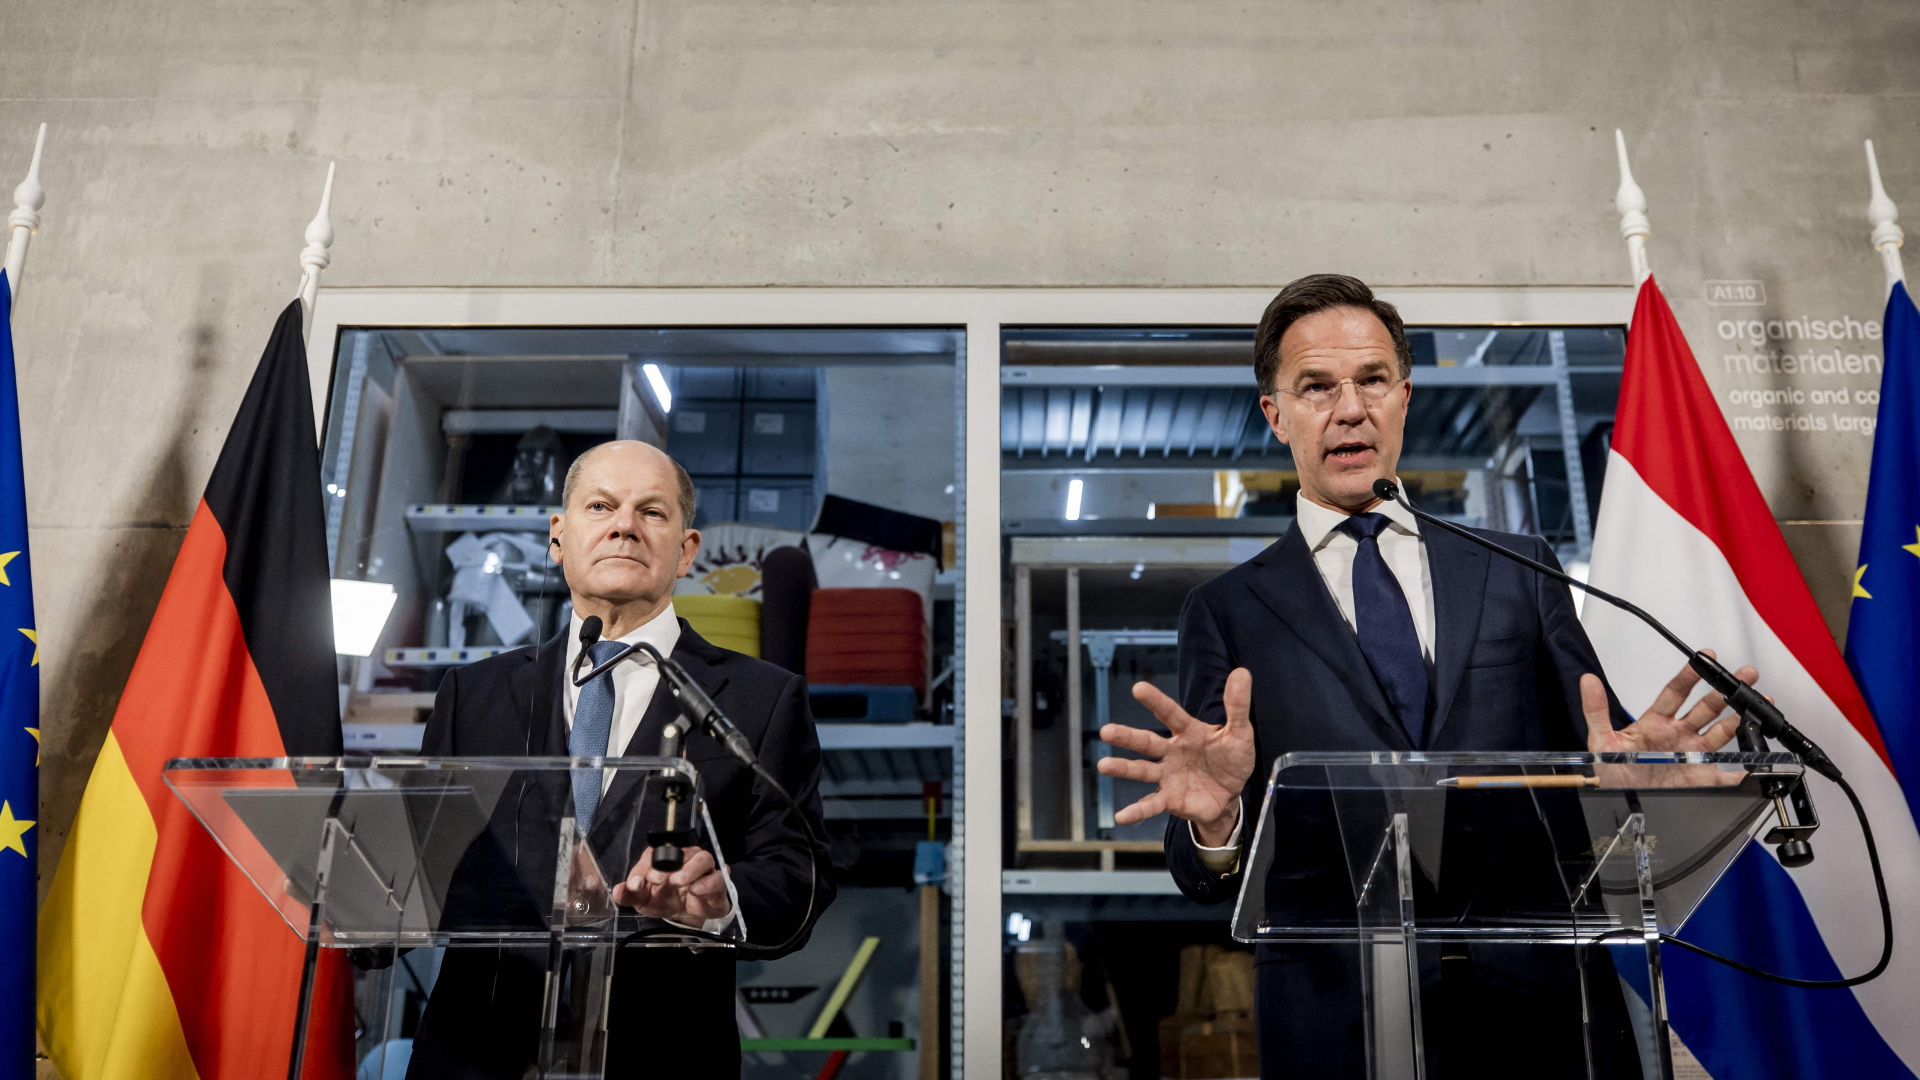 Bundeskanzler Olaf Scholz und der niederländische Ministerpräsident Mark Rutte sprechen bei einer Pressekonferenz über die deutsch-niederländischen Regierungskonsultationen in Rotterdam.  | AFP